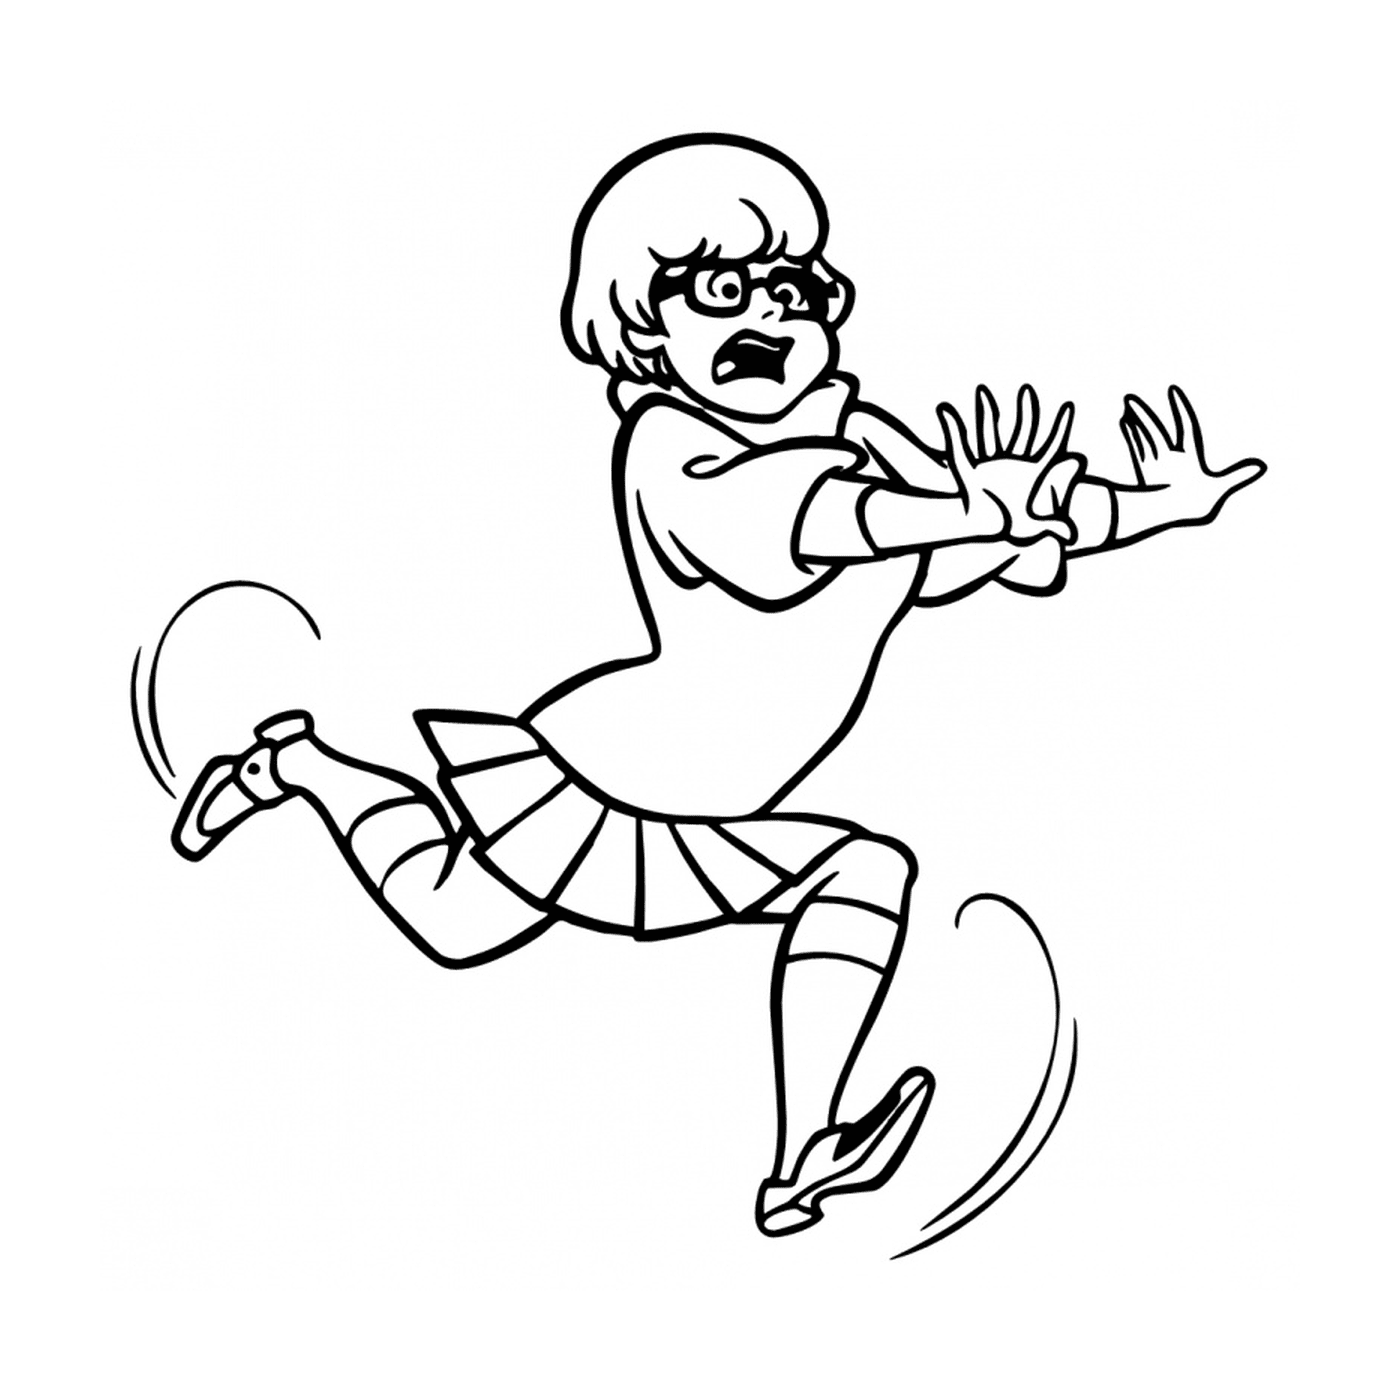  Una chica dibujada corriendo en el aire 